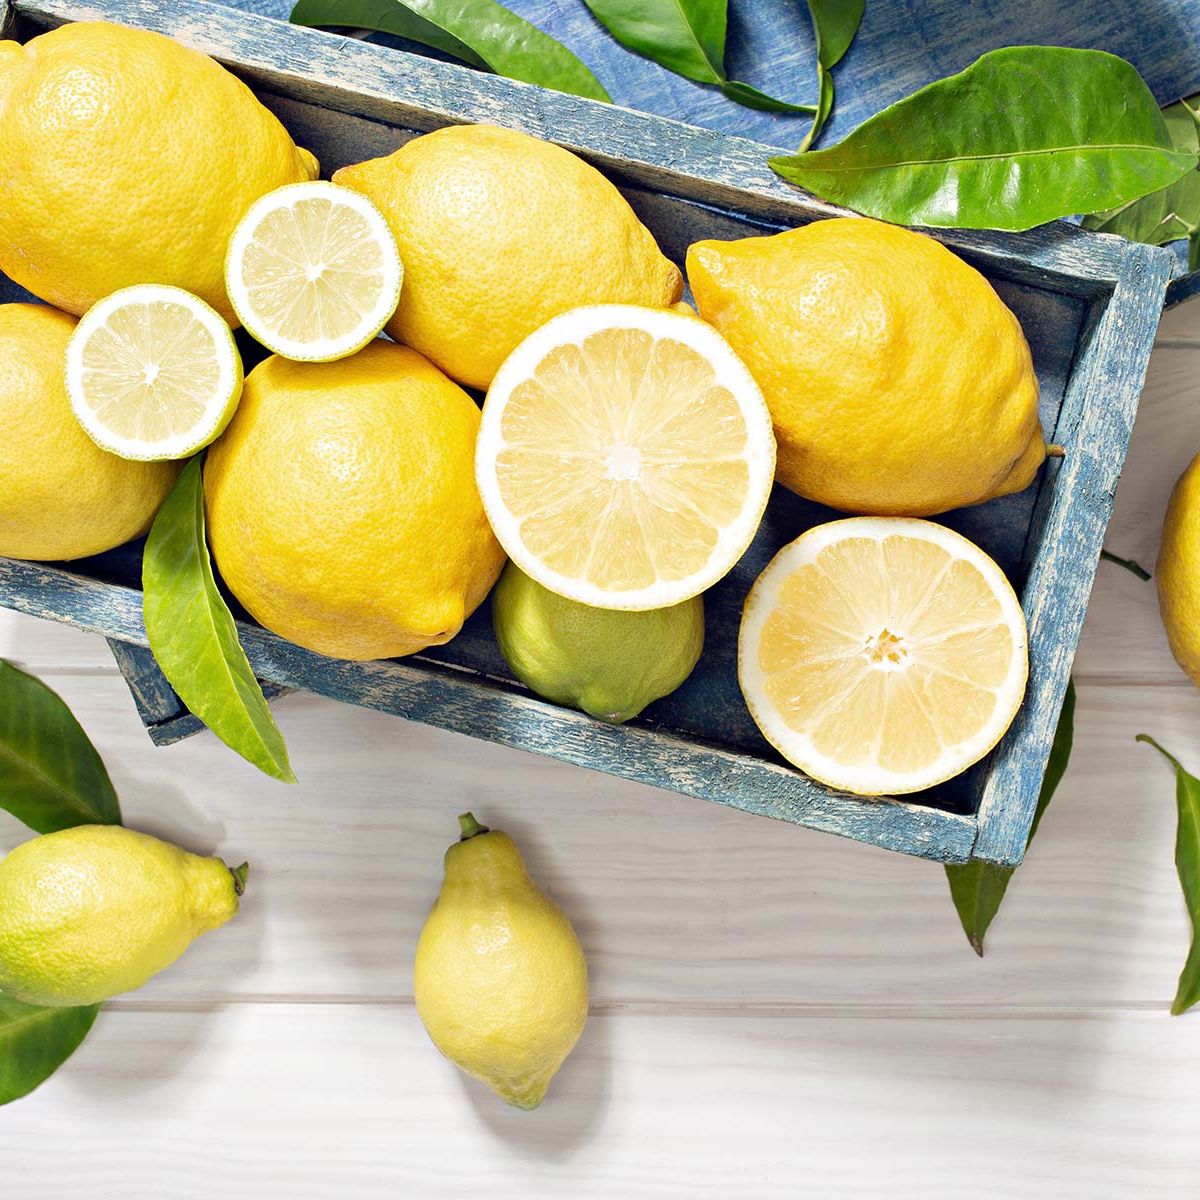 25 trucos y usos del limón caseros que no conocías